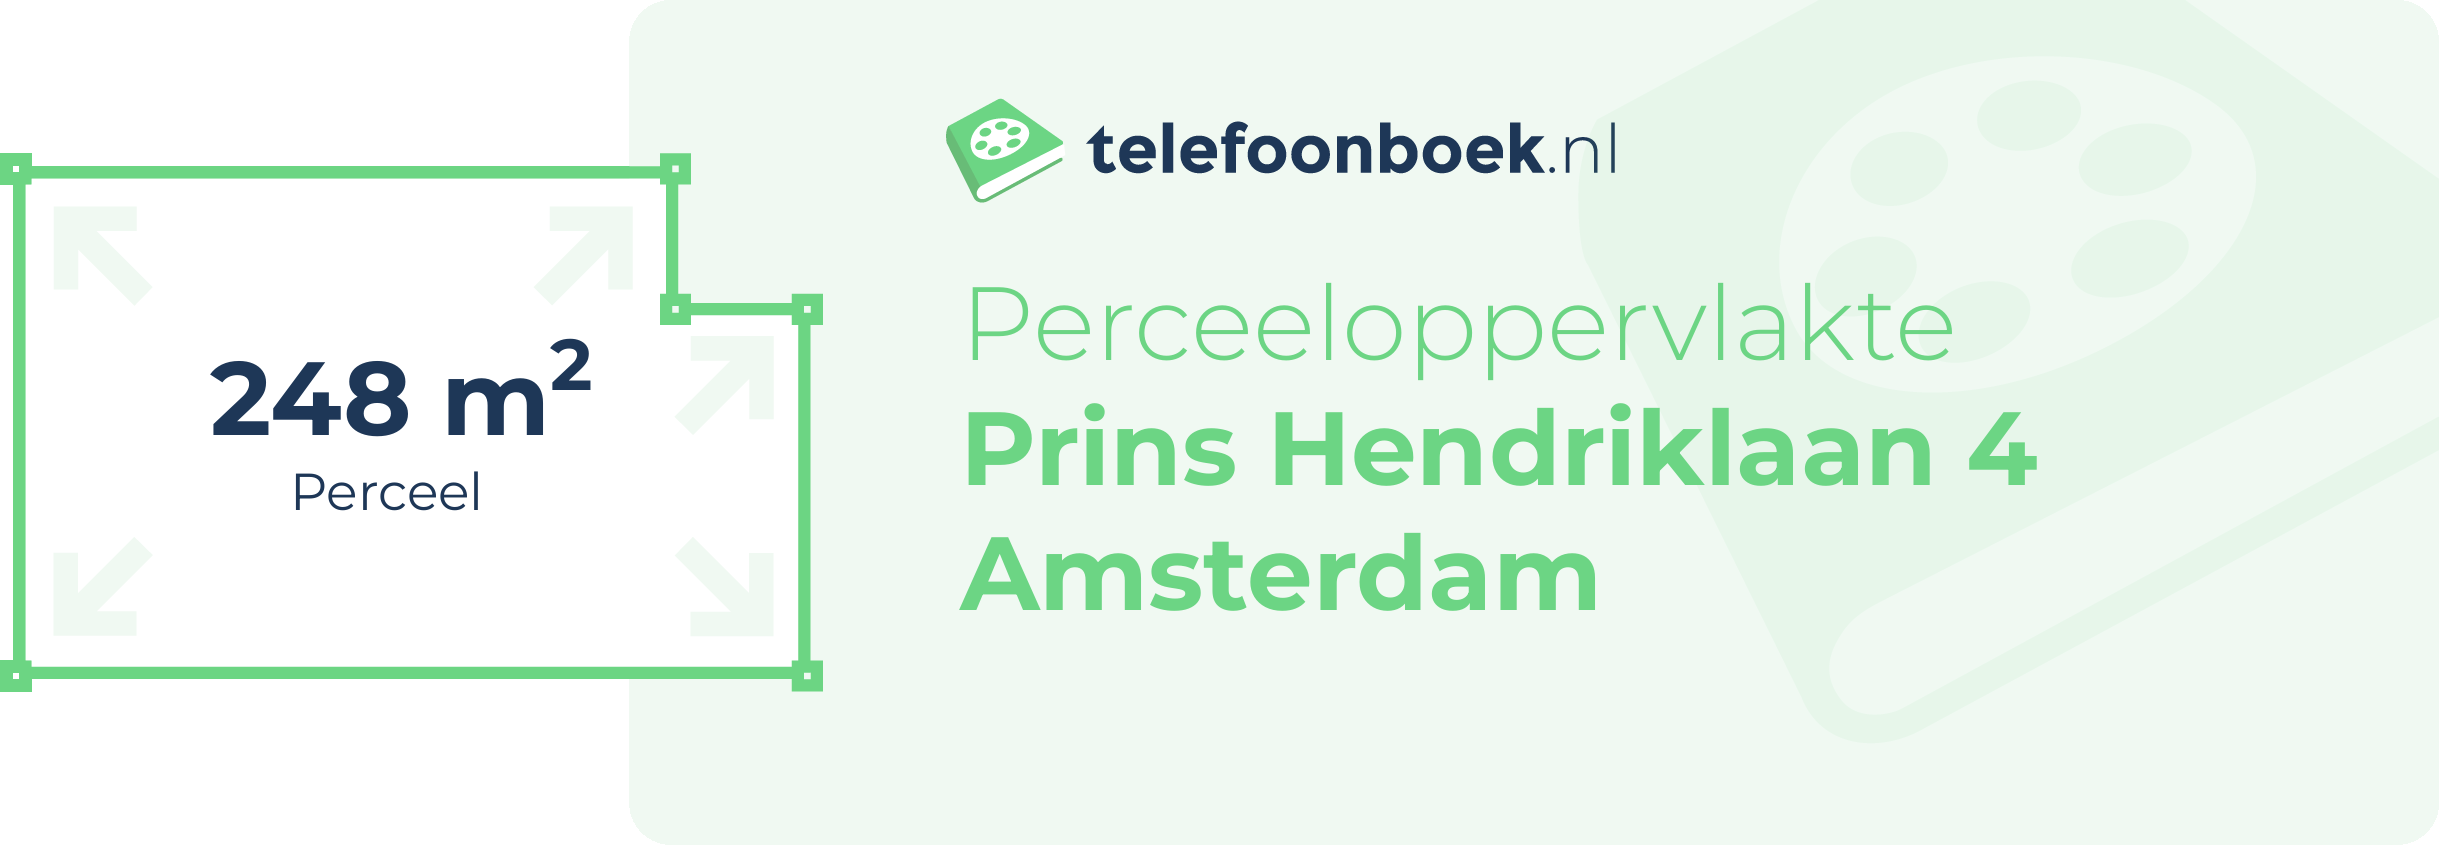 Perceeloppervlakte Prins Hendriklaan 4 Amsterdam